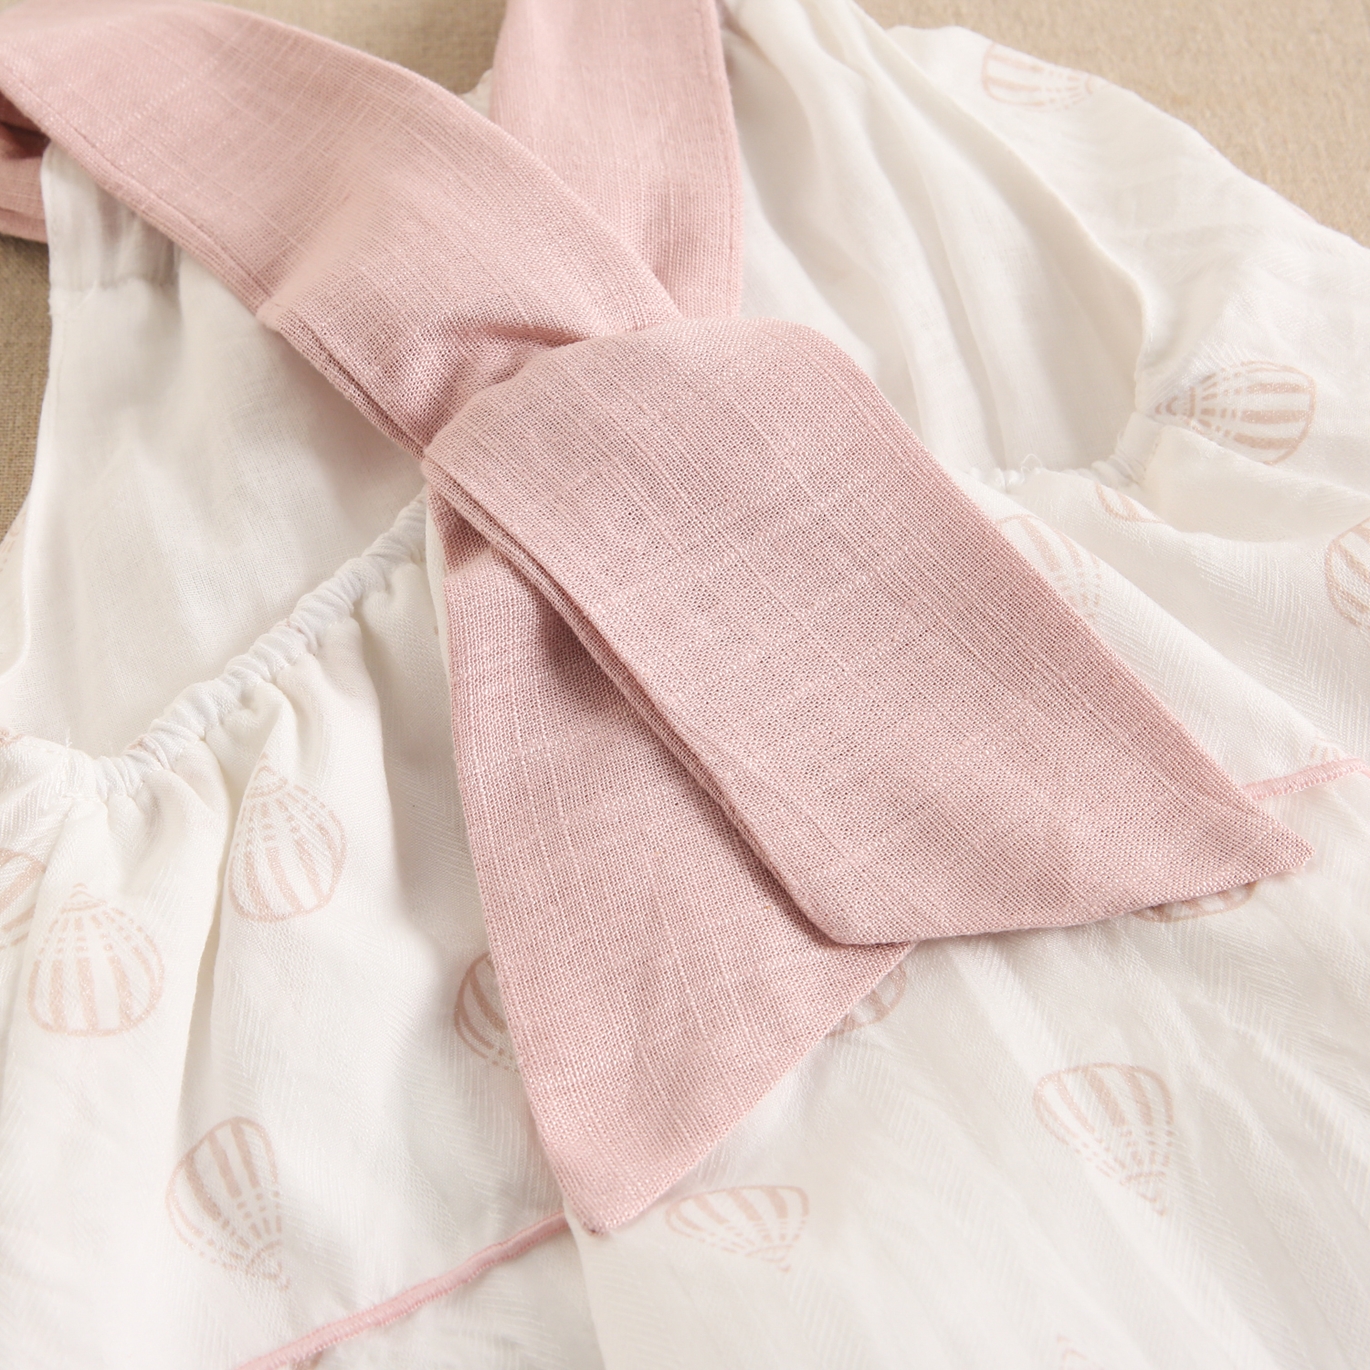 Imagen de Vestido de niña blanco con globos y detalles en rosa.